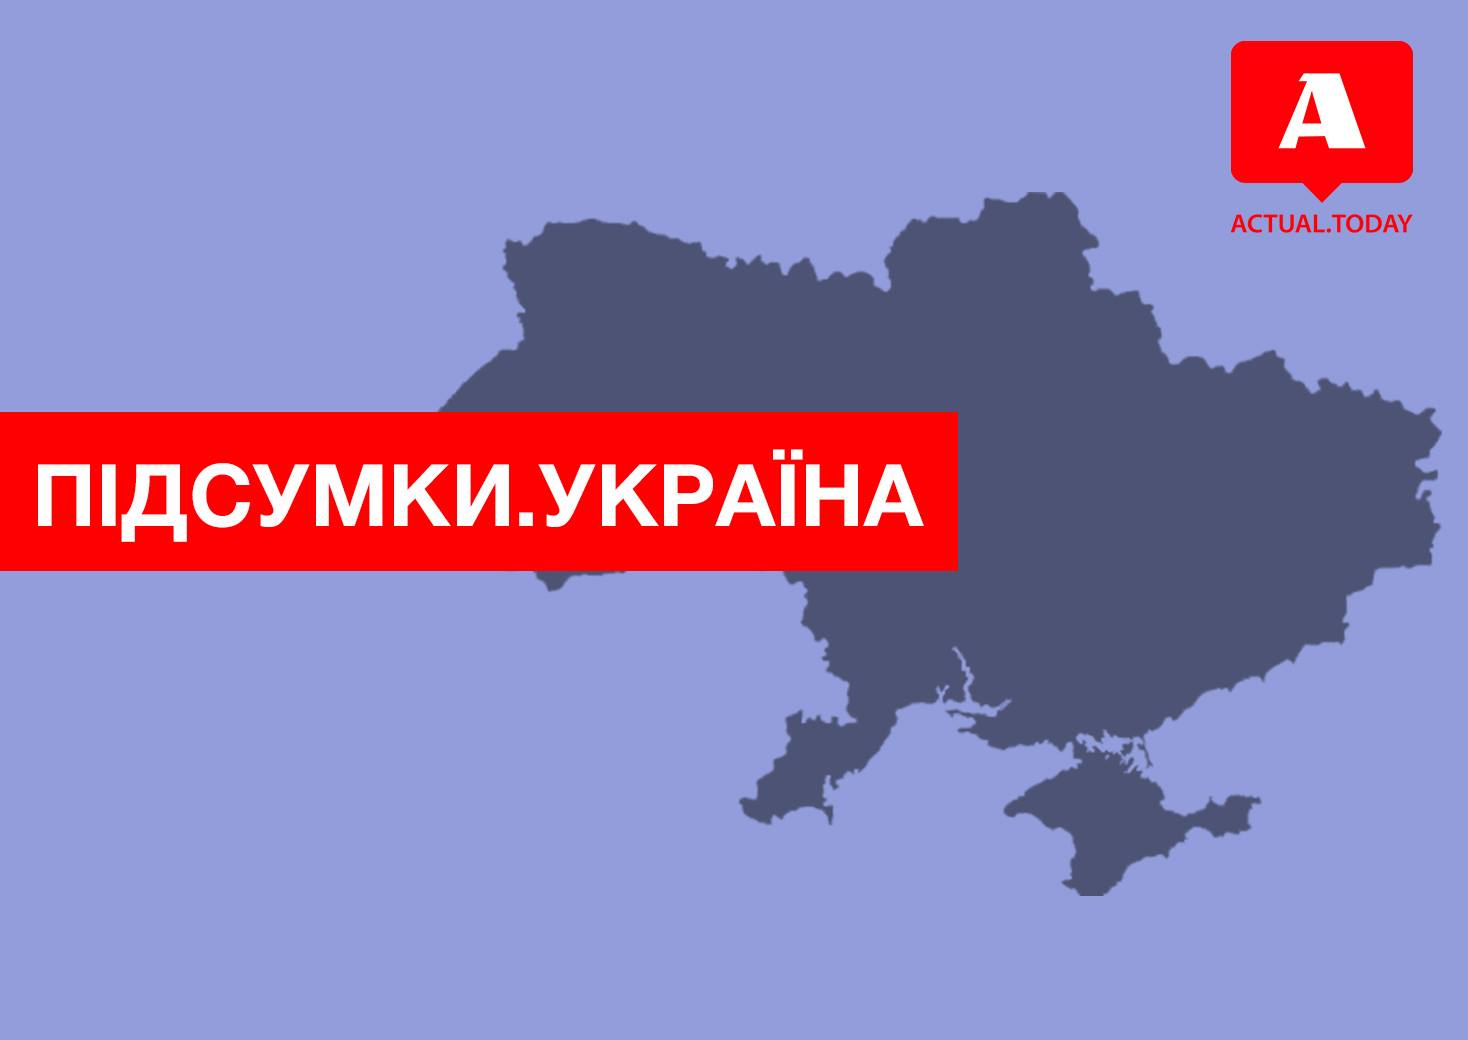 ГБР интересуется Ющенком и Саакашвили, Павловского отпустили под домашний арест, Коломойский высказал свое мнение о войне на Донбассе – главные итоги четверга